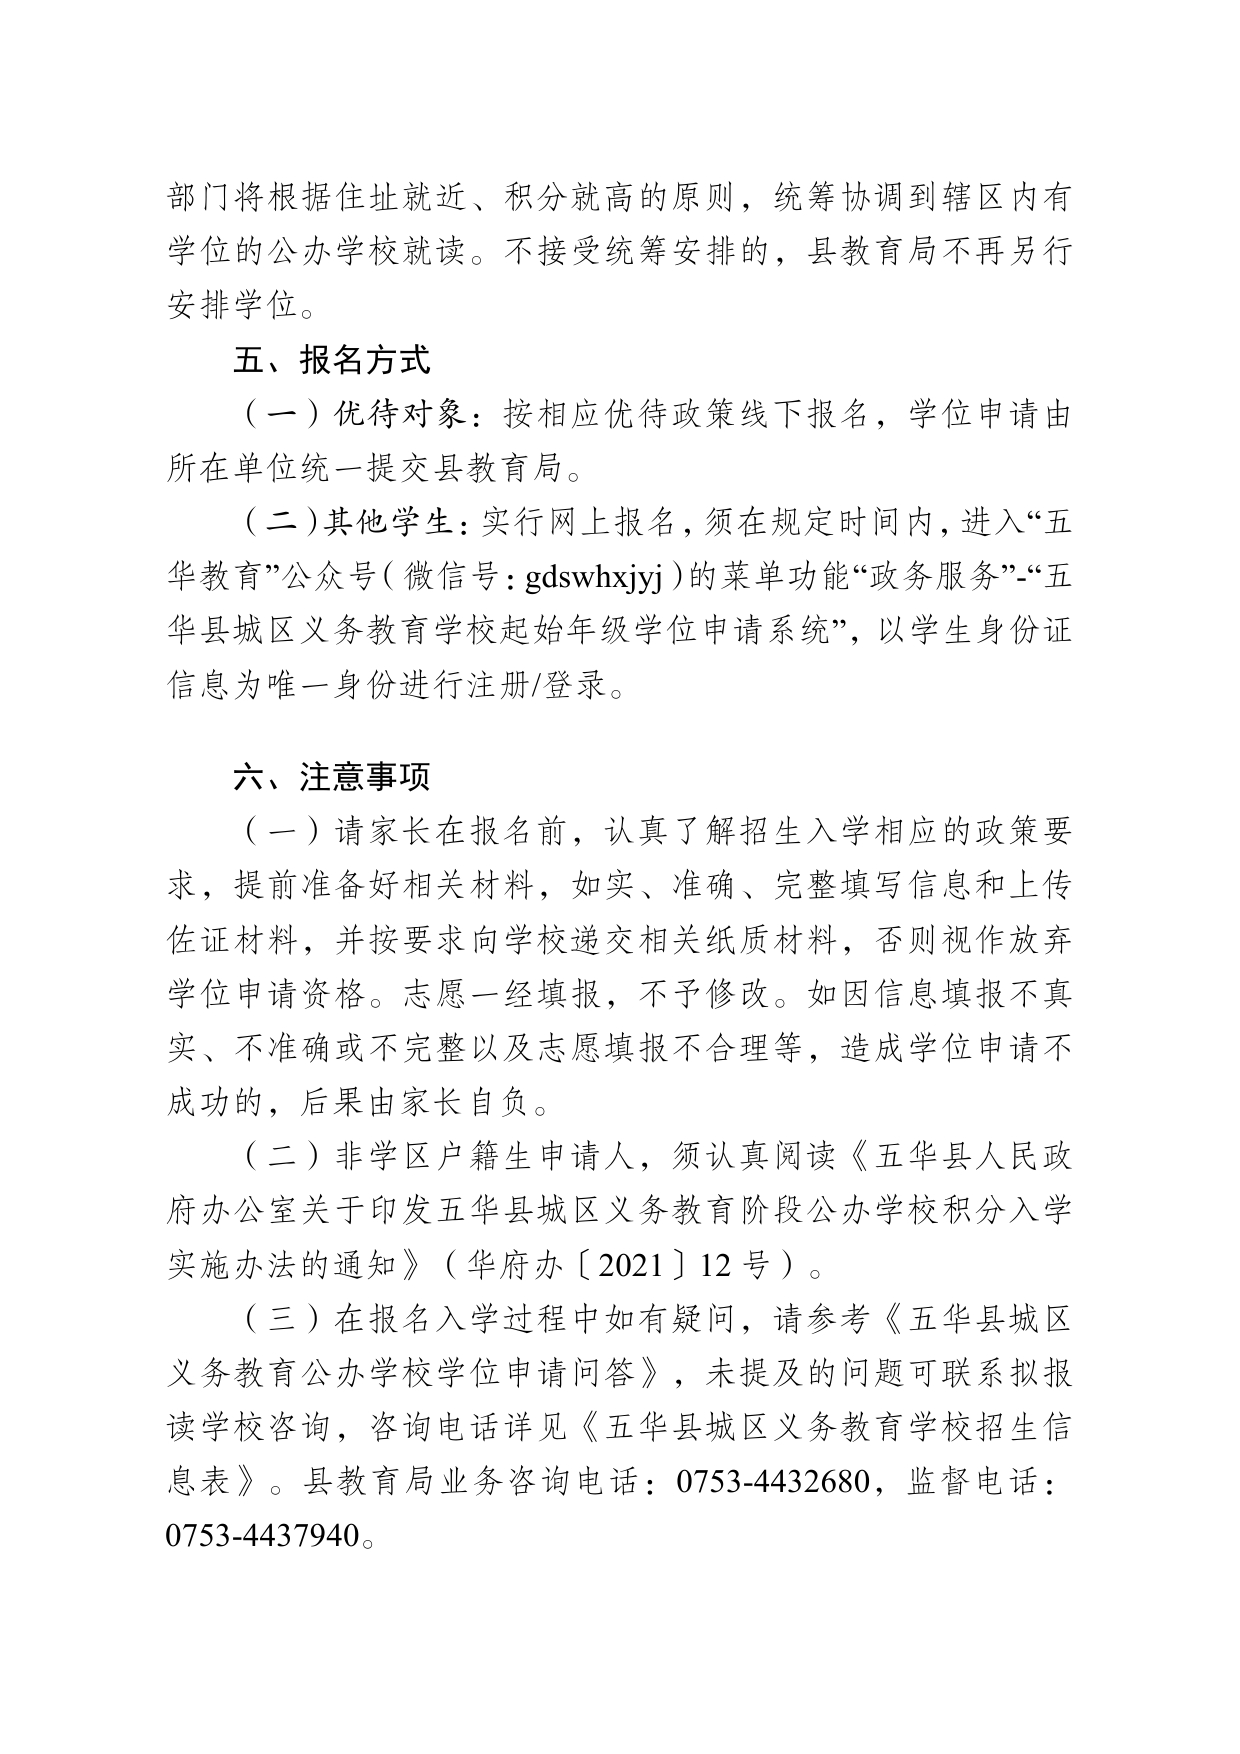 2022年秋季五华县城区义务教育公办学校招生公告0004.jpg